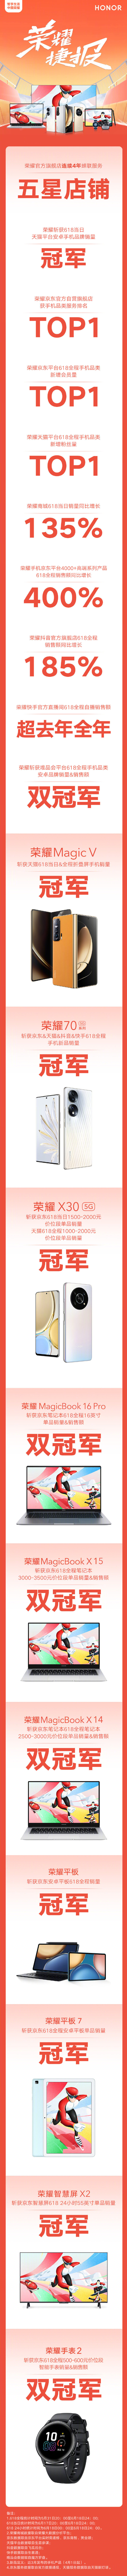 荣耀 618 战报公布： 4千元级高端系列销售额同比增长 400%